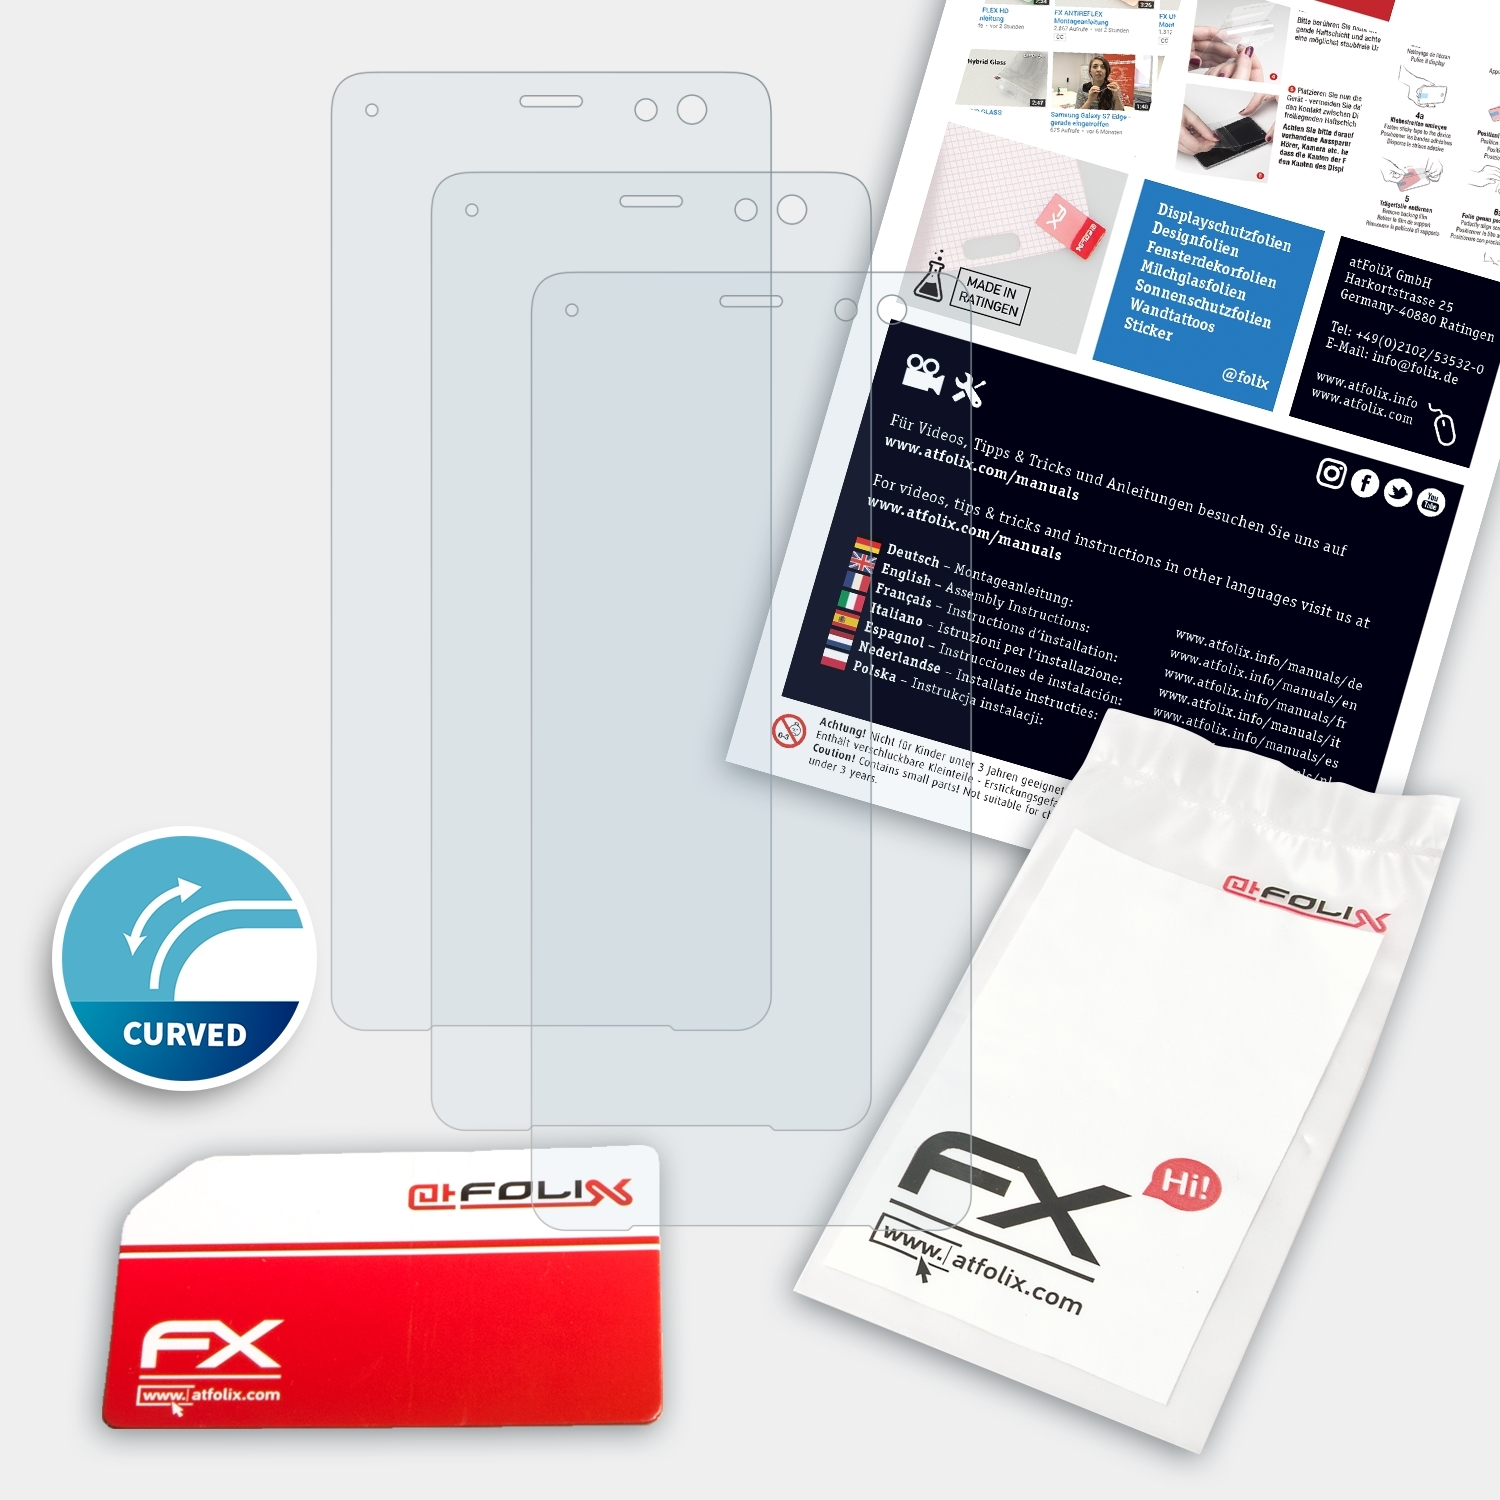 3x Xperia FX-ActiFleX Displayschutz(für ATFOLIX XZ3) Sony